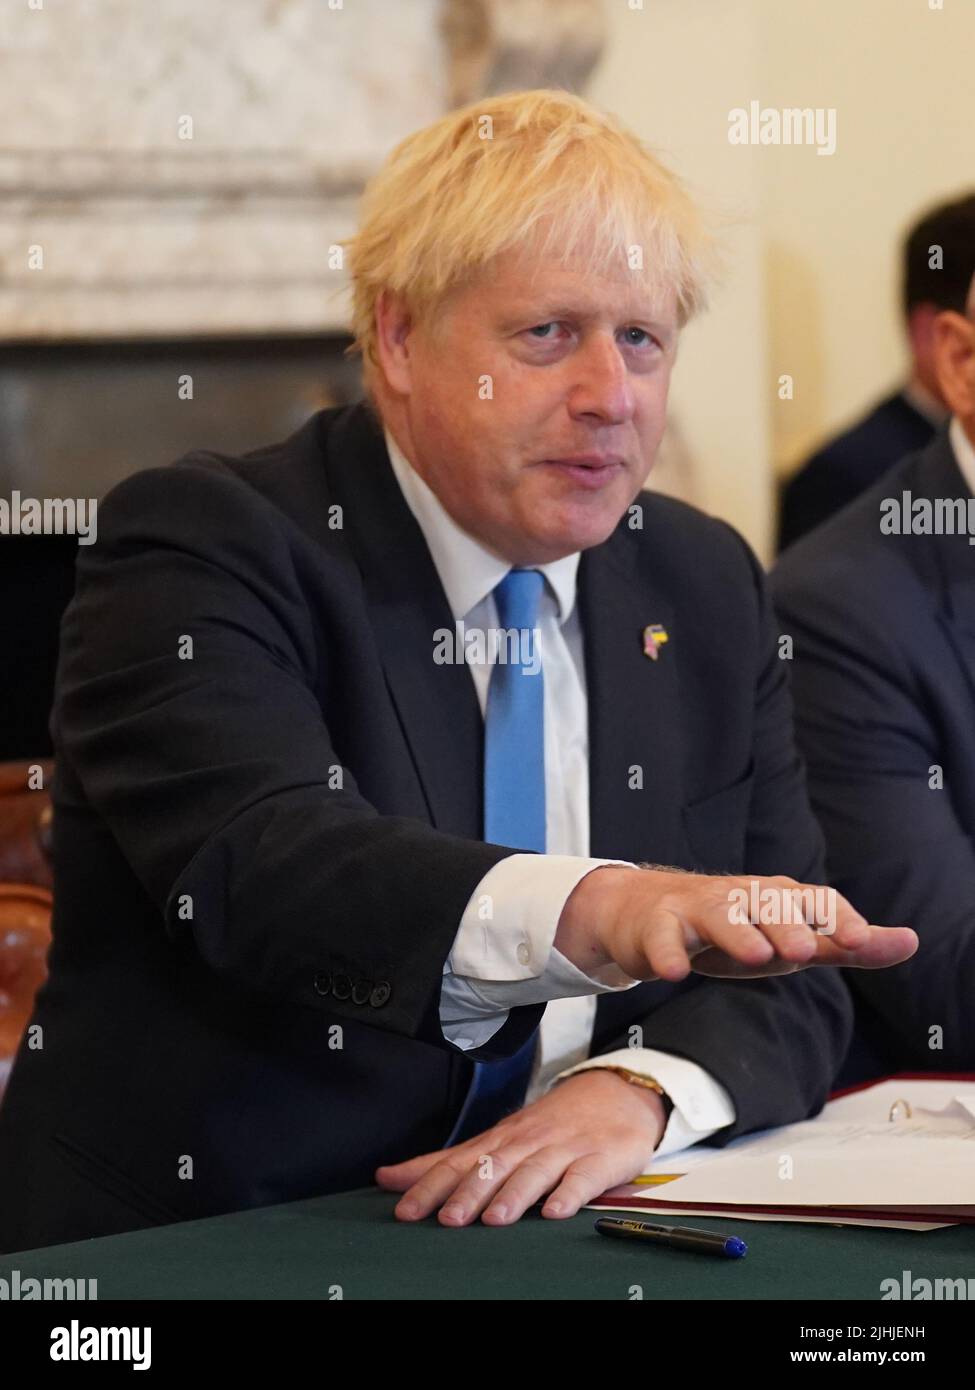 Premierminister Boris Johnson während einer Kabinettssitzung in der Downing Street 10, London. Bilddatum: Dienstag, 19. Juli 2022. Stockfoto